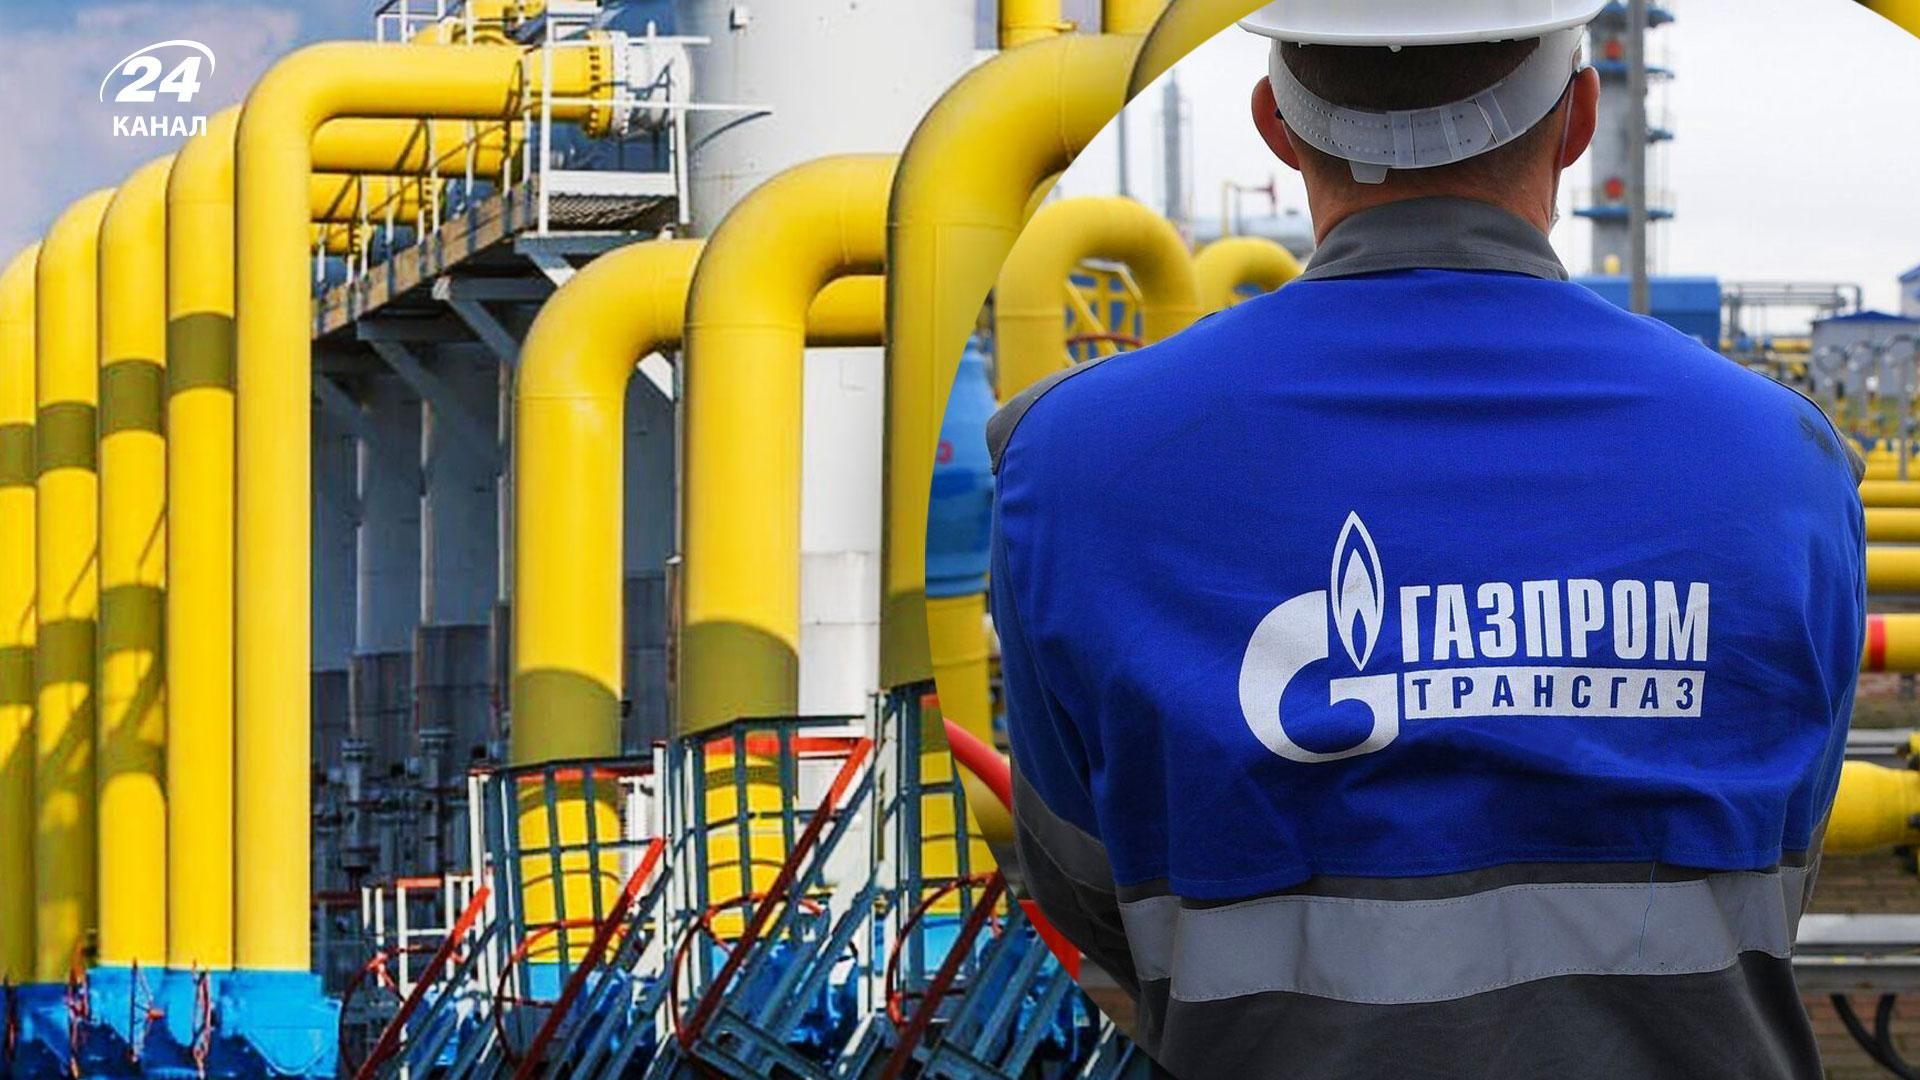 Газпром підвищив тиск у мережі без попередження